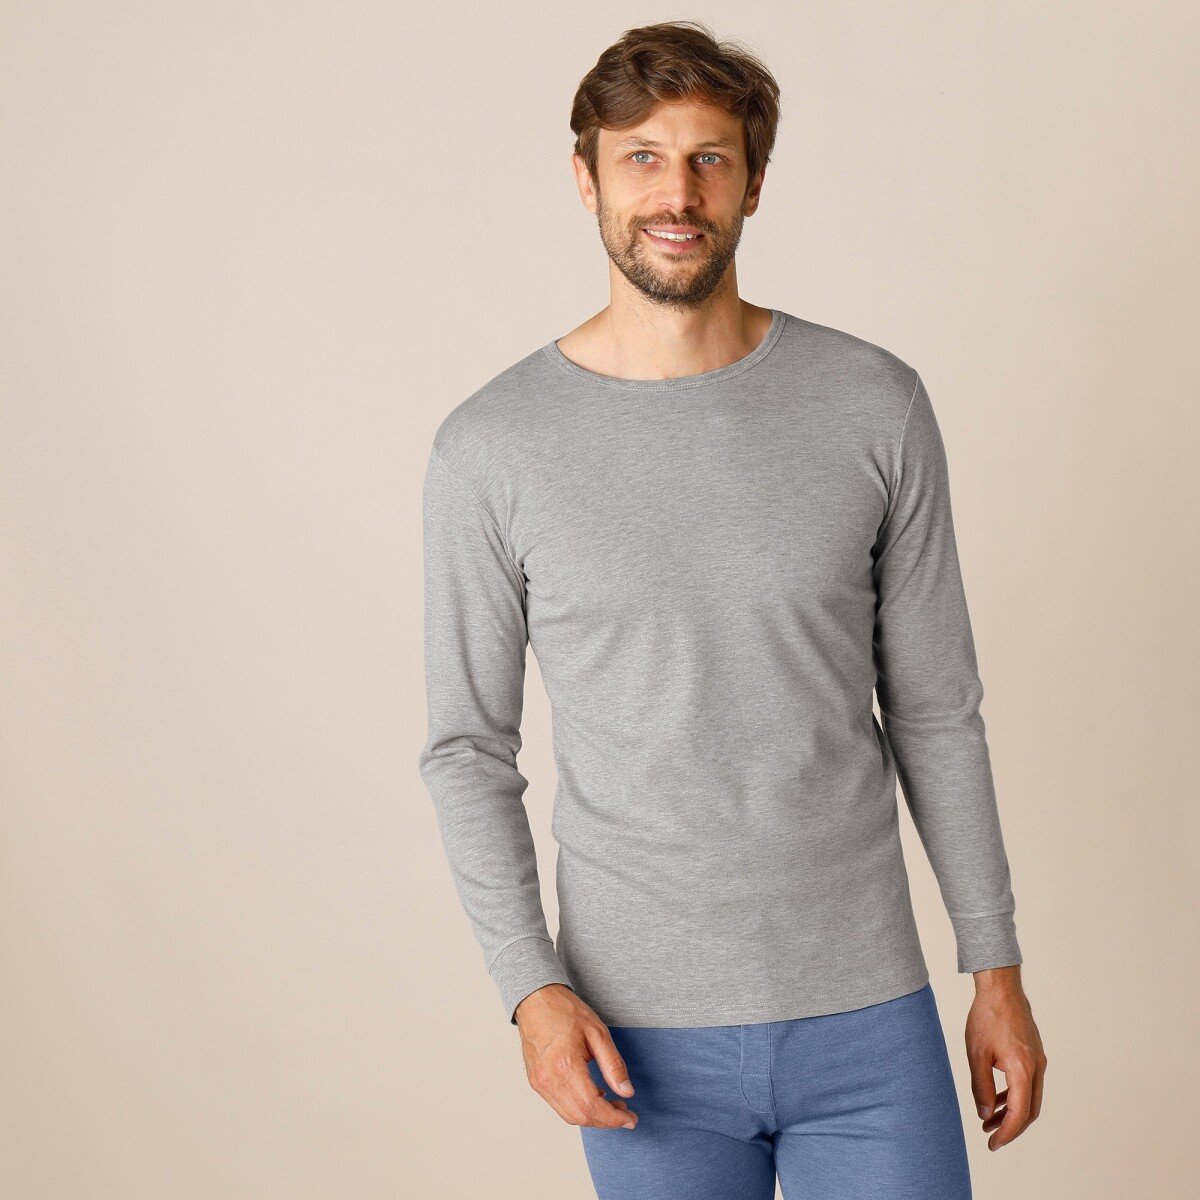 Spodné tričko s dlhými rukávmi z polyesteru, súprava 2 ks sivý melír 85 92 (M)